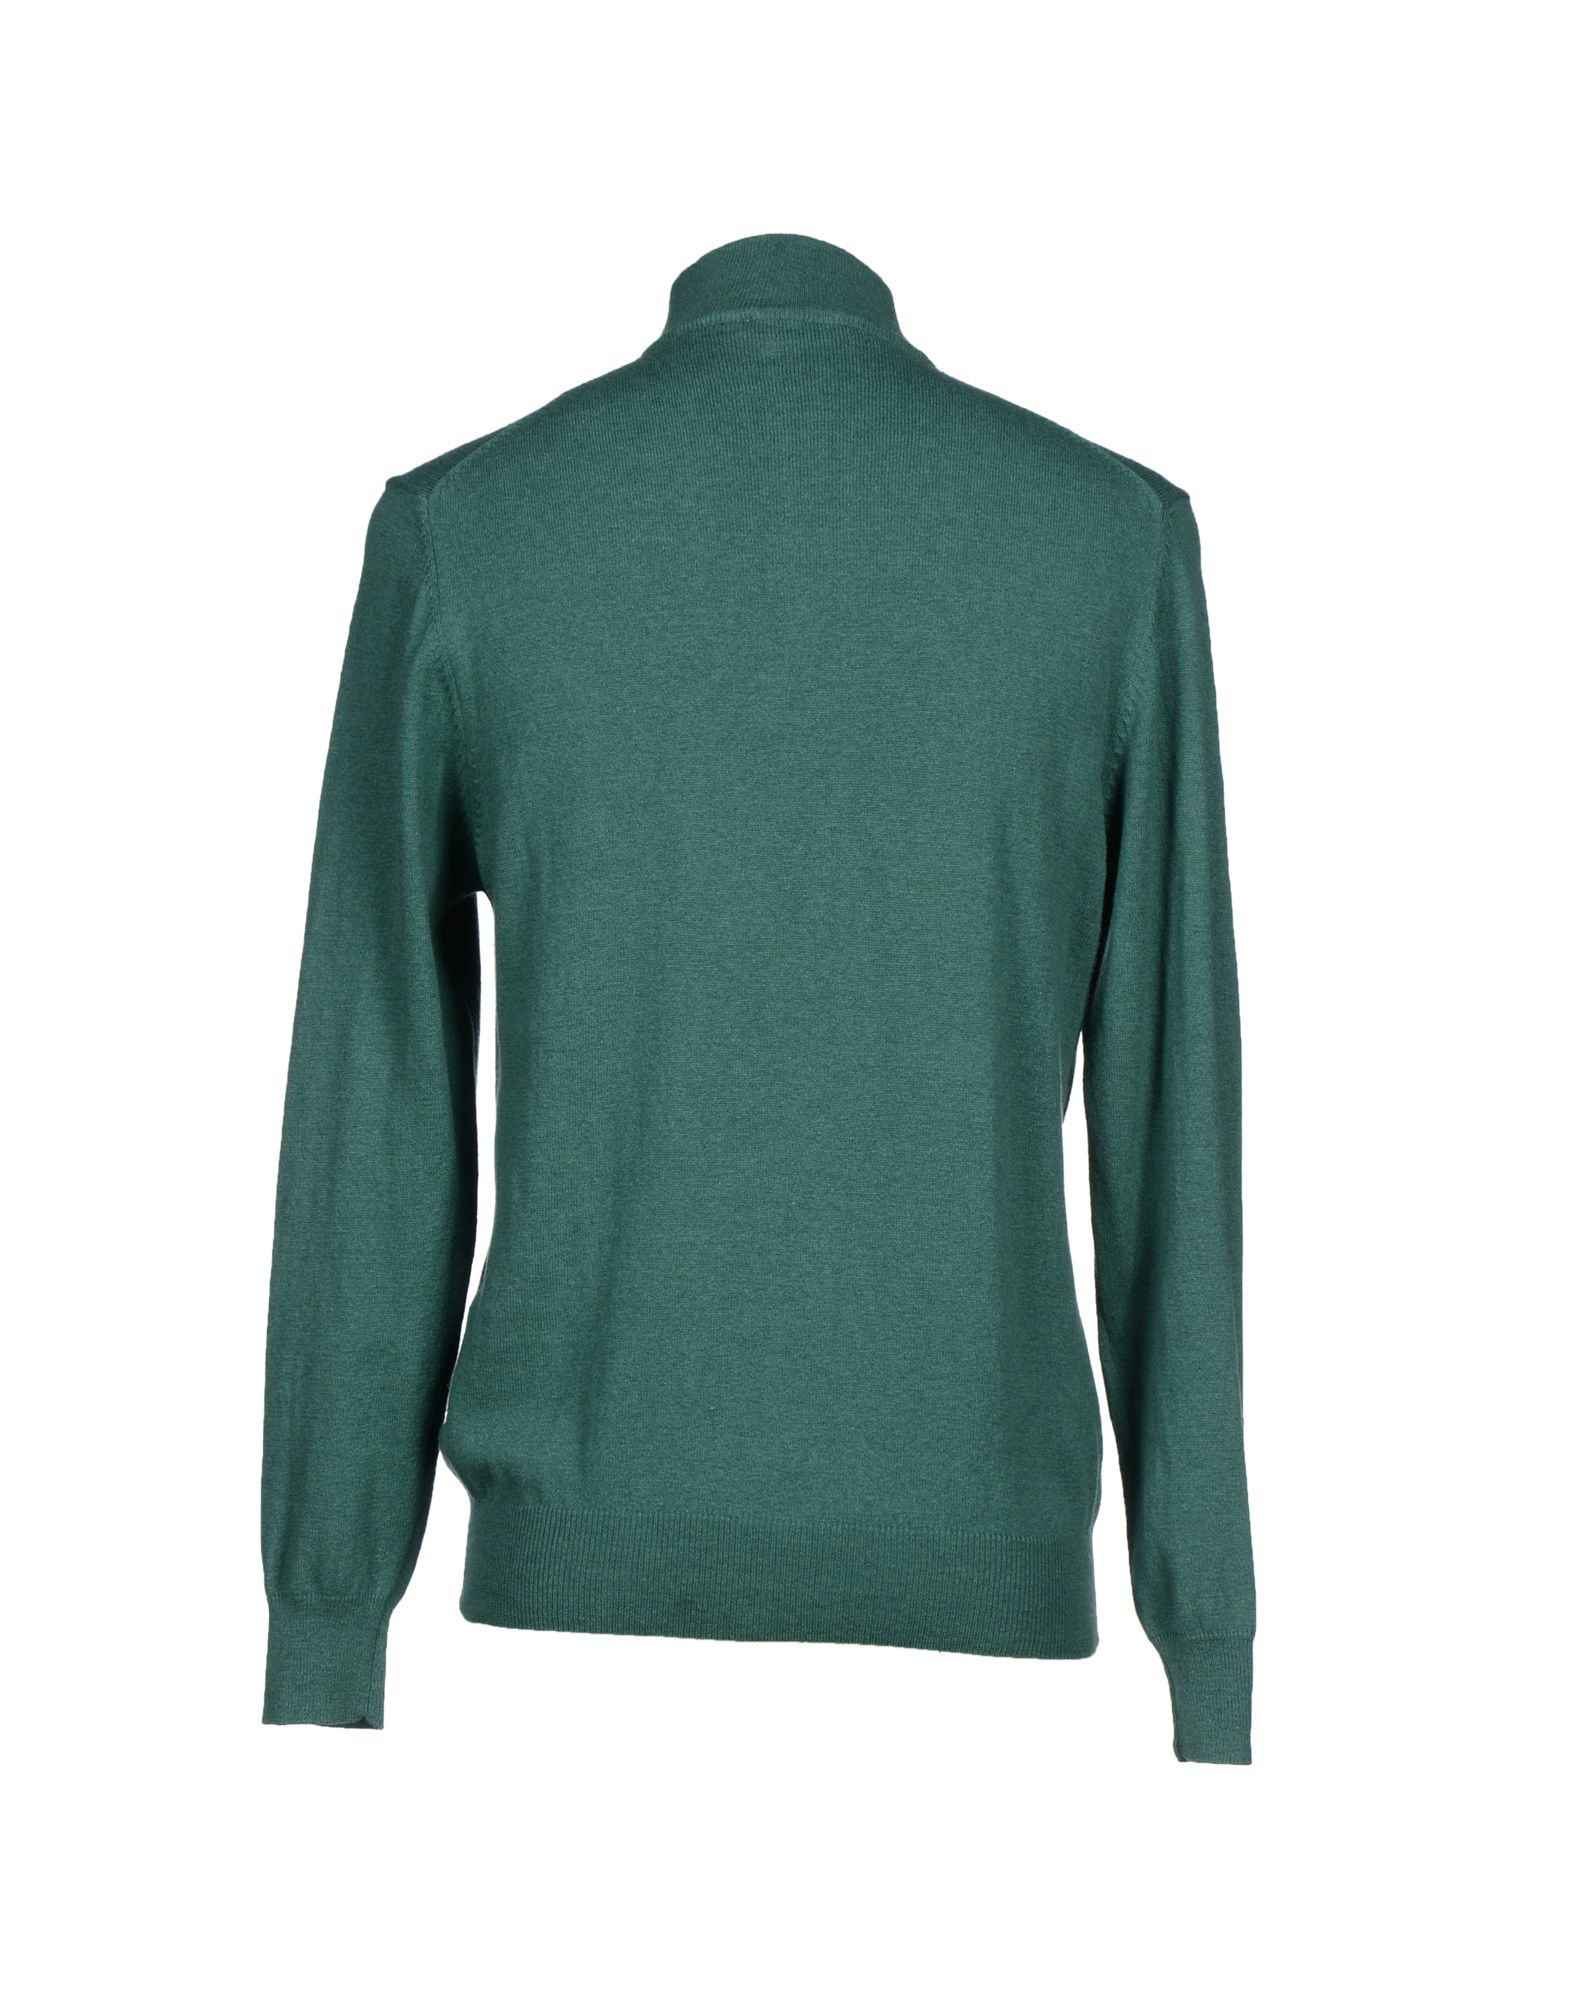 Balmain Wool Turtleneck in Green for Men - Lyst